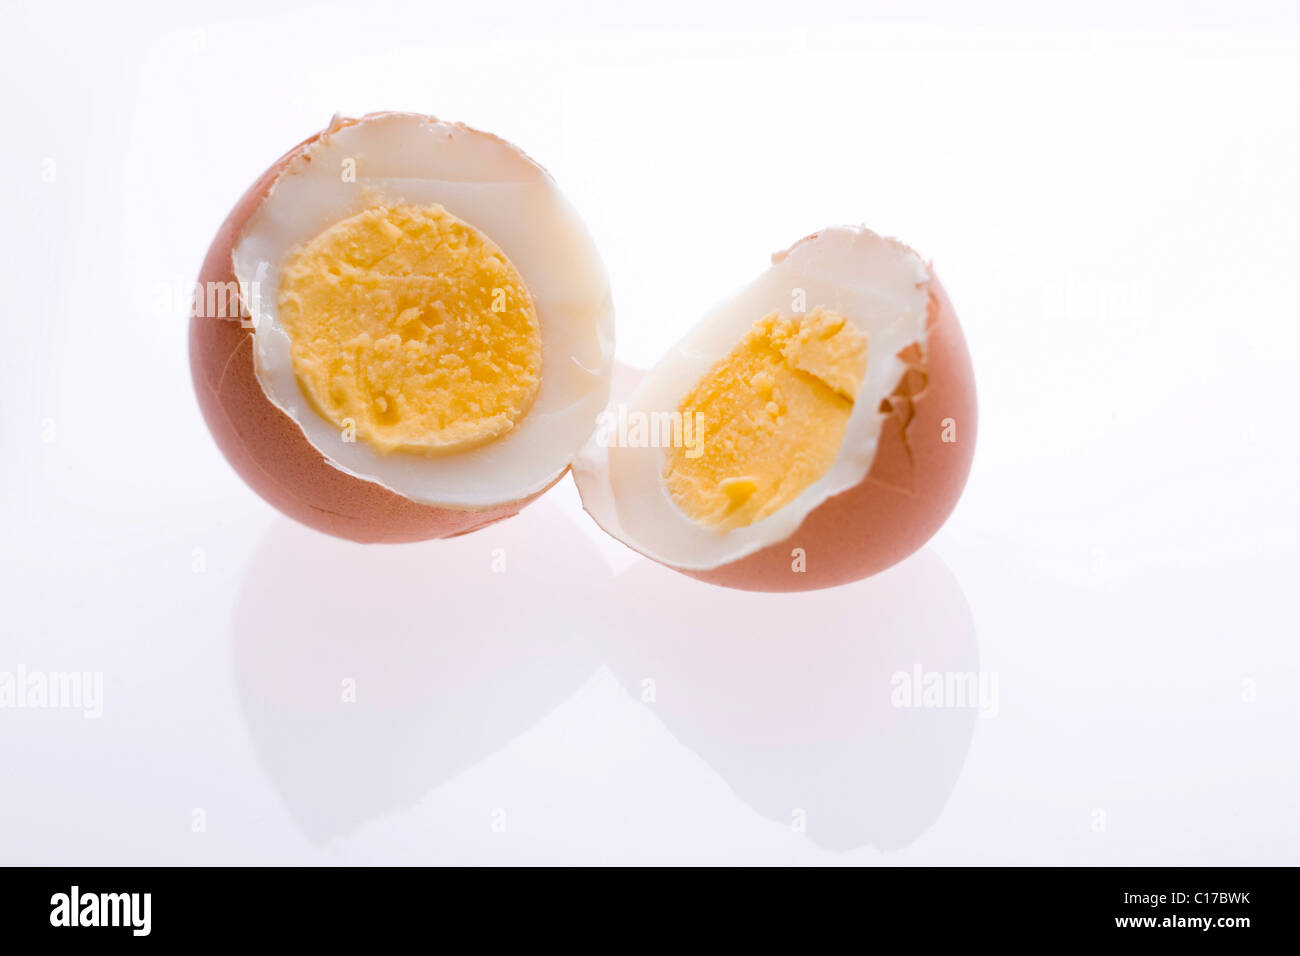 Hard-boiled egg, halves Stock Photo